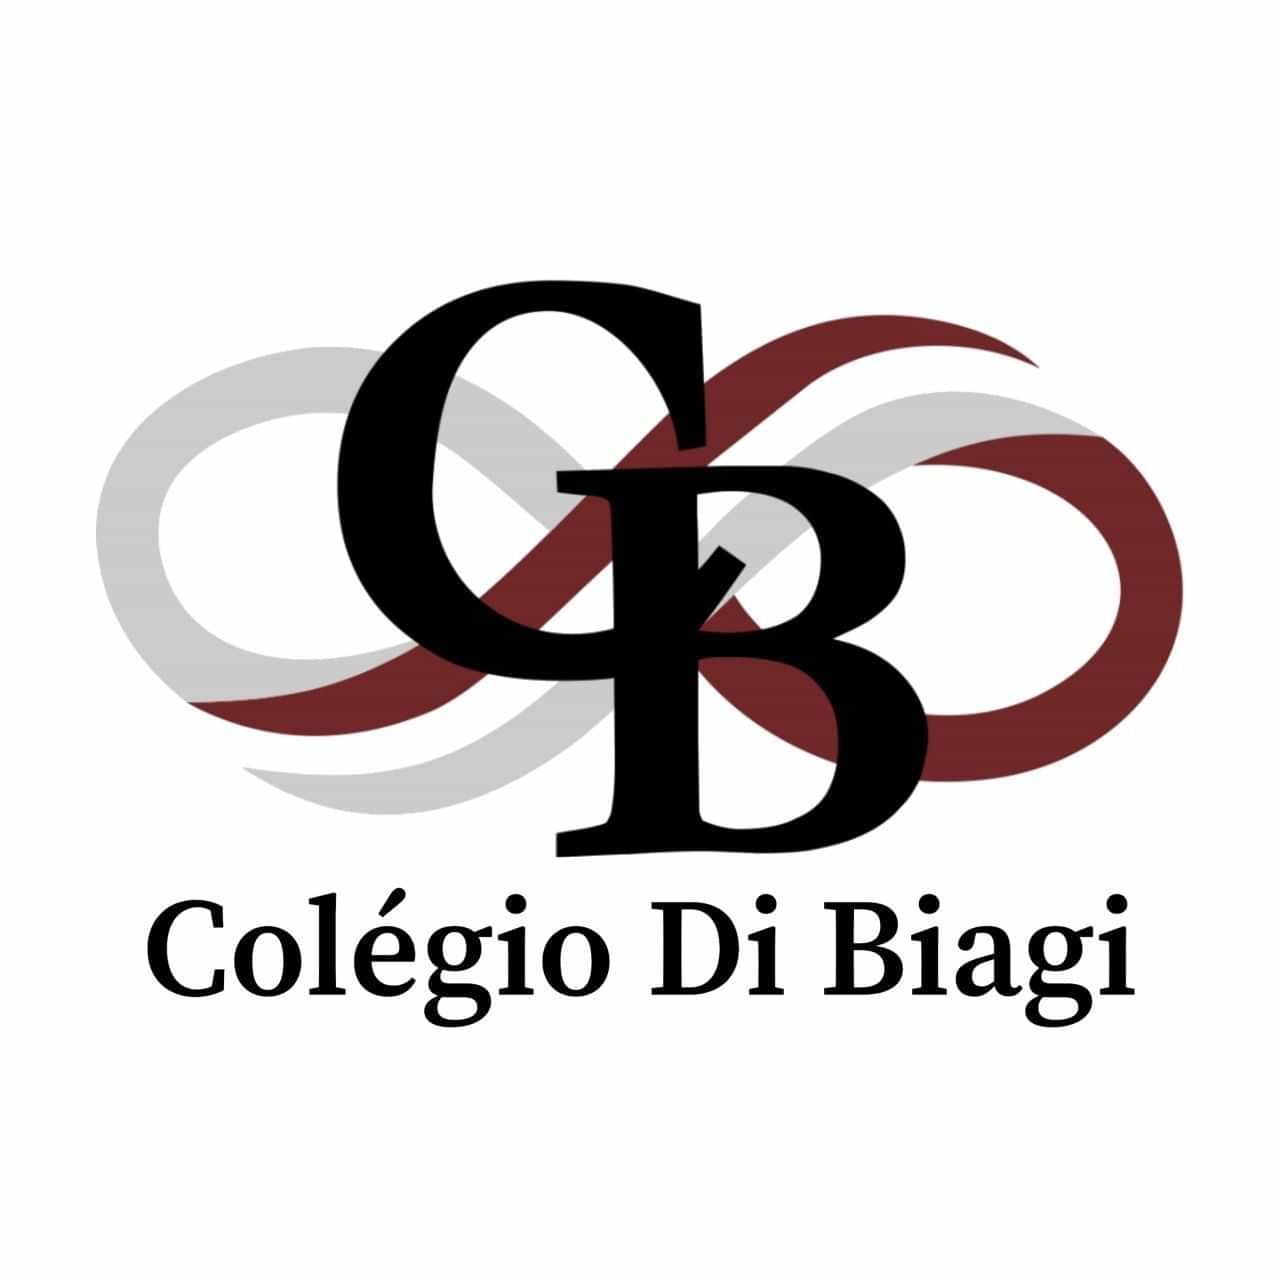  Colégio Di Biagi 